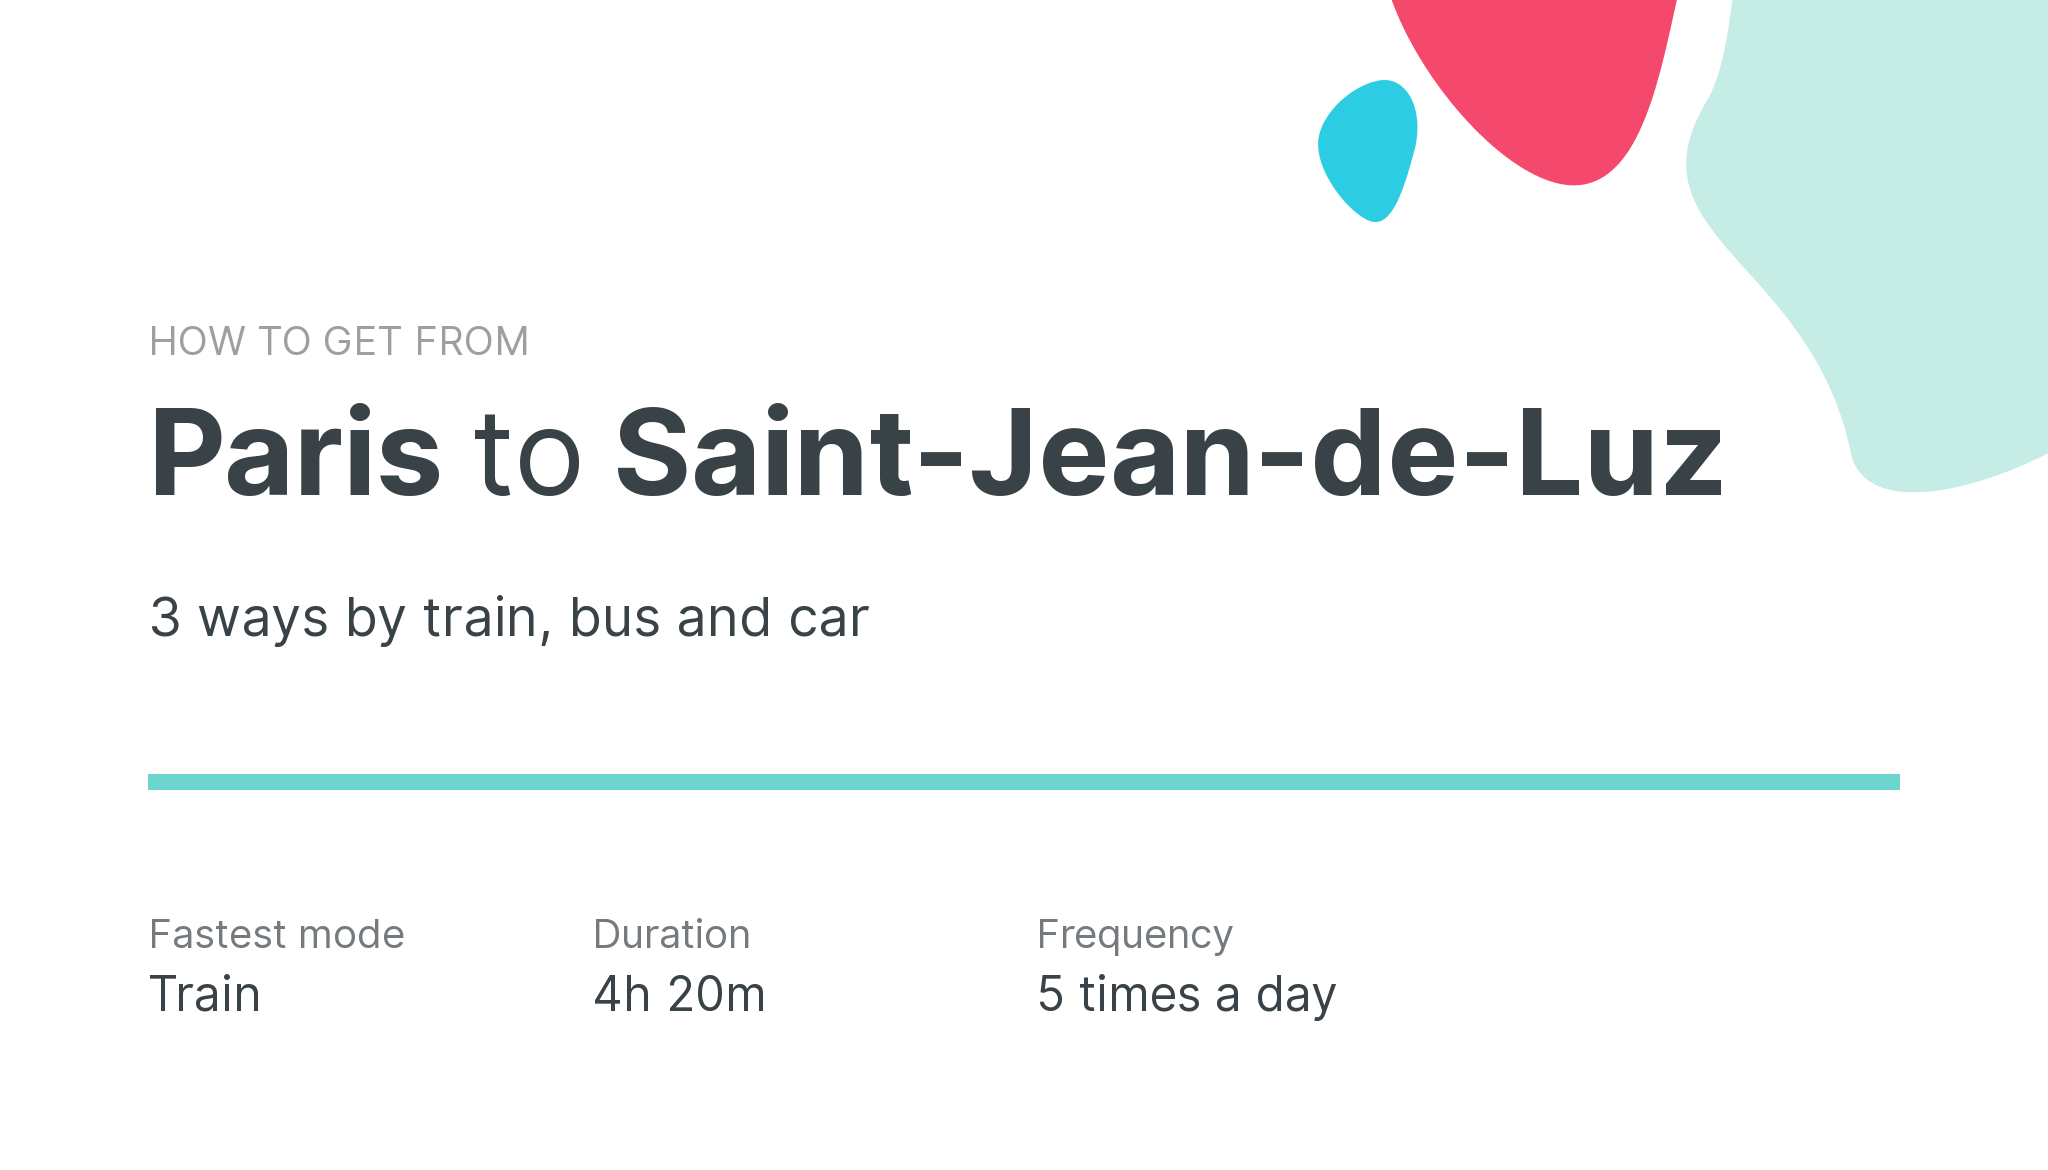 How do I get from Paris to Saint-Jean-de-Luz